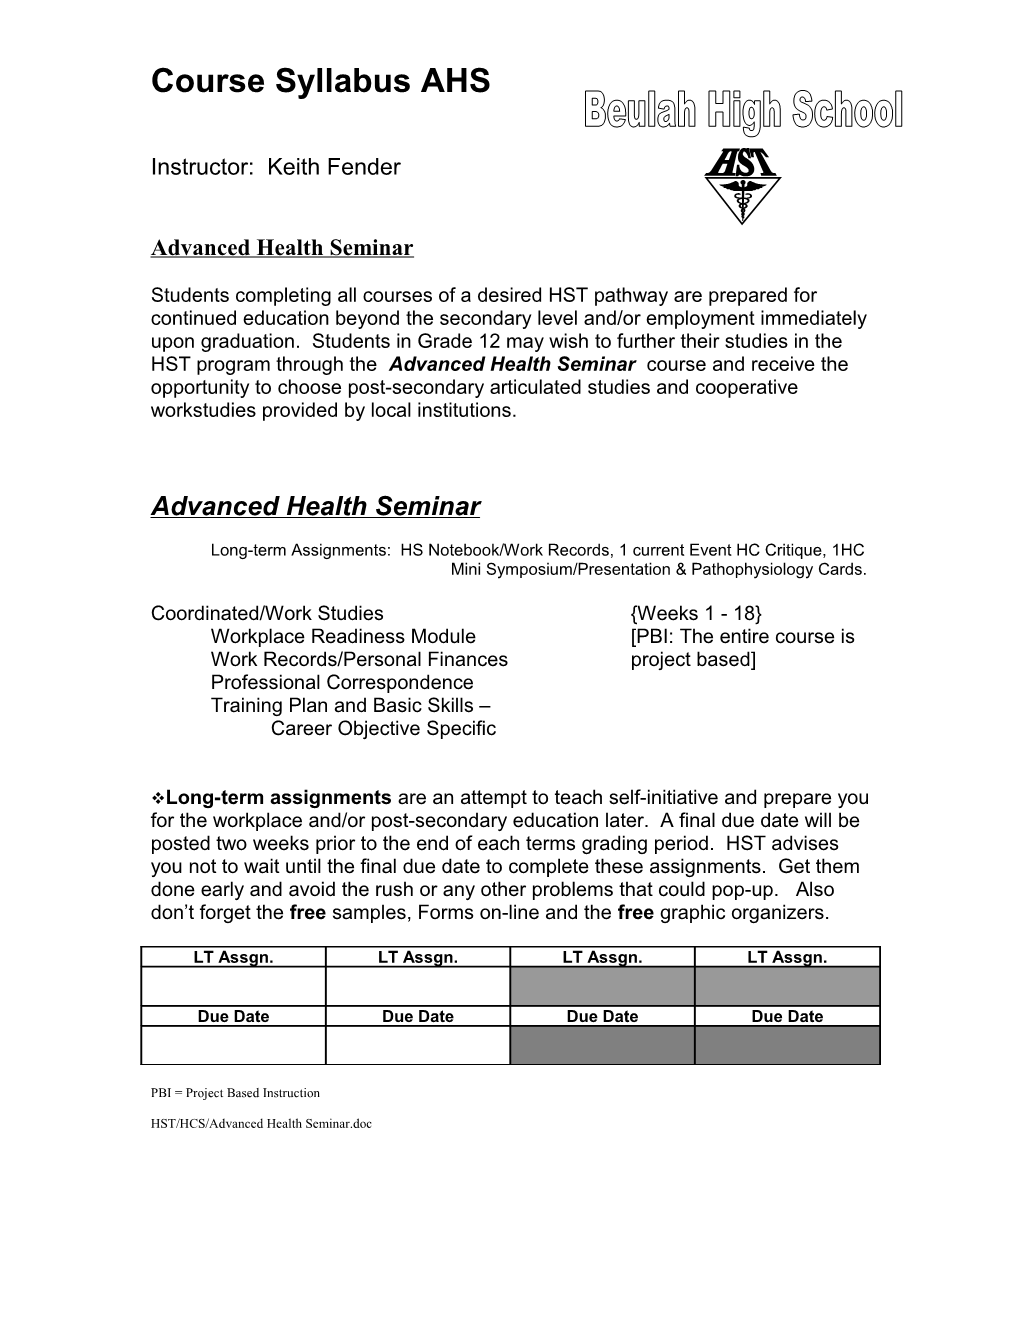 Advanced Health Seminar